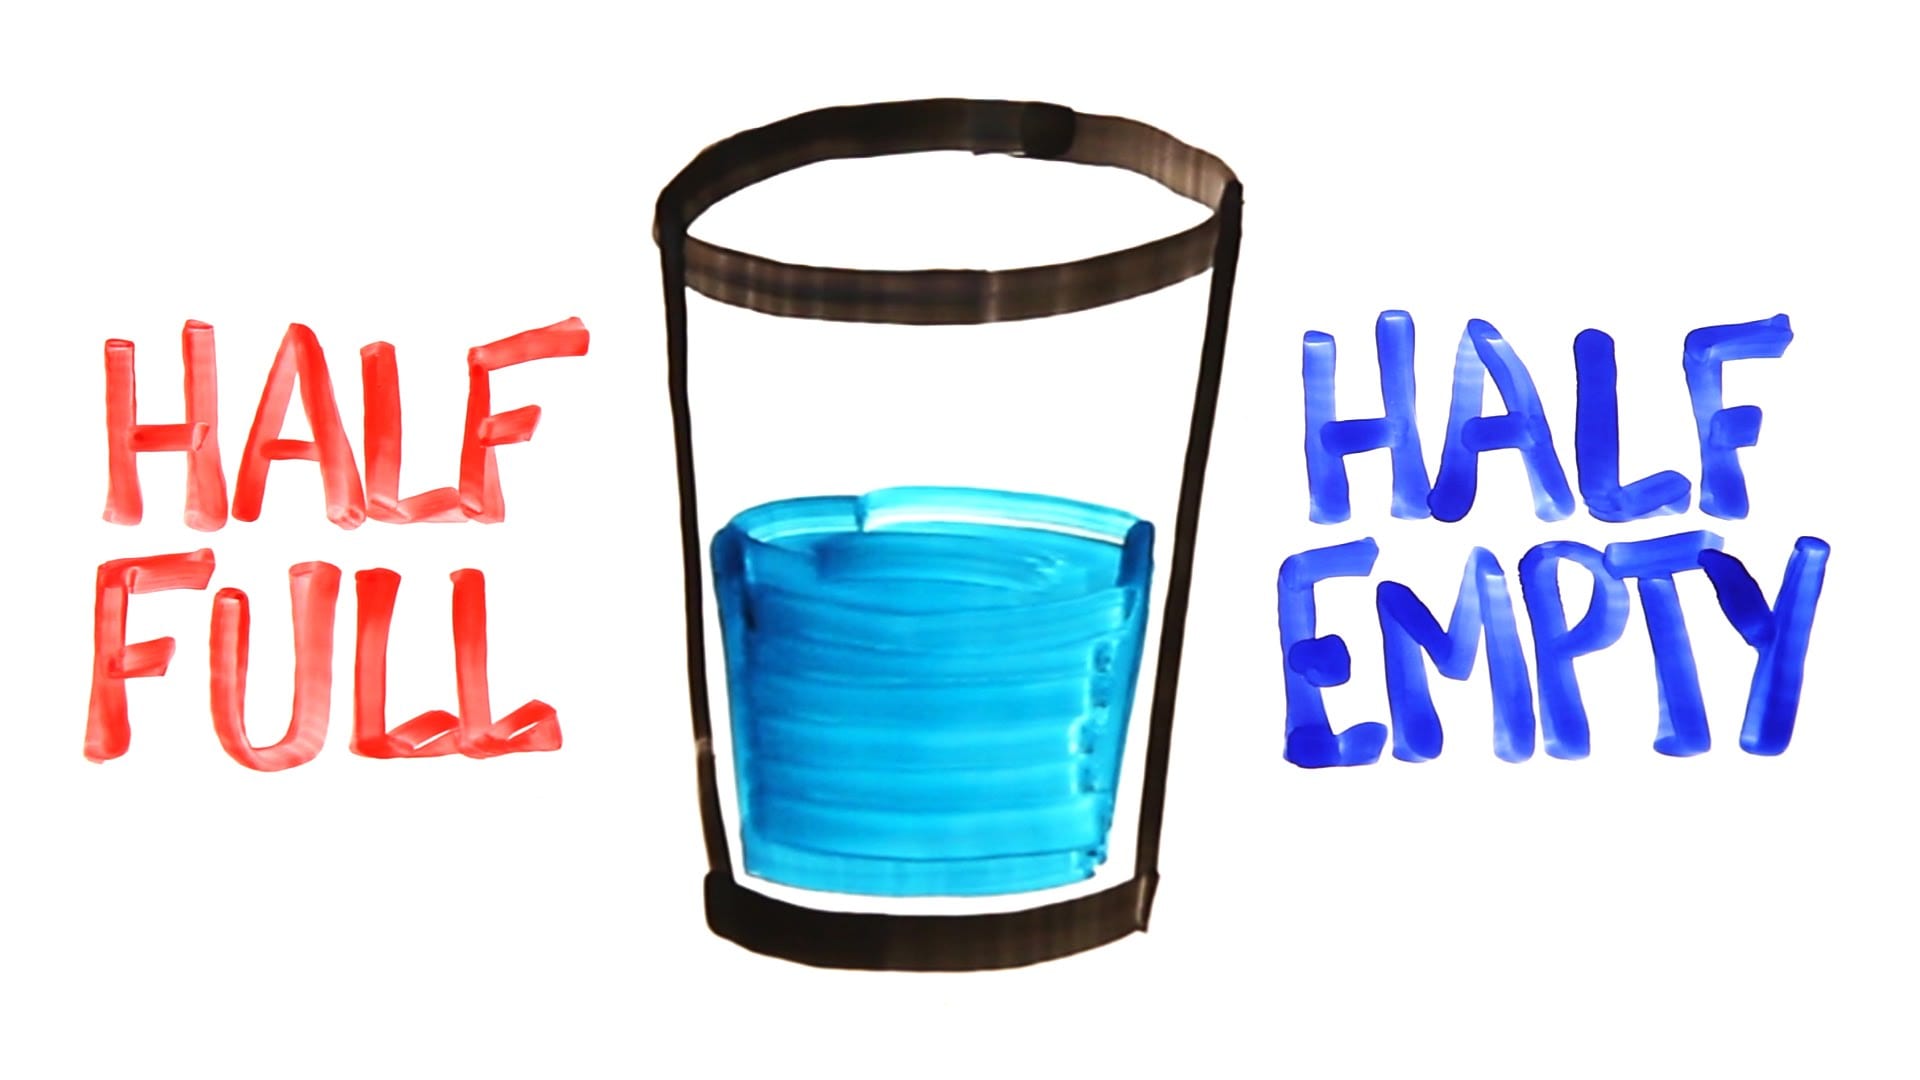 glass-half-full